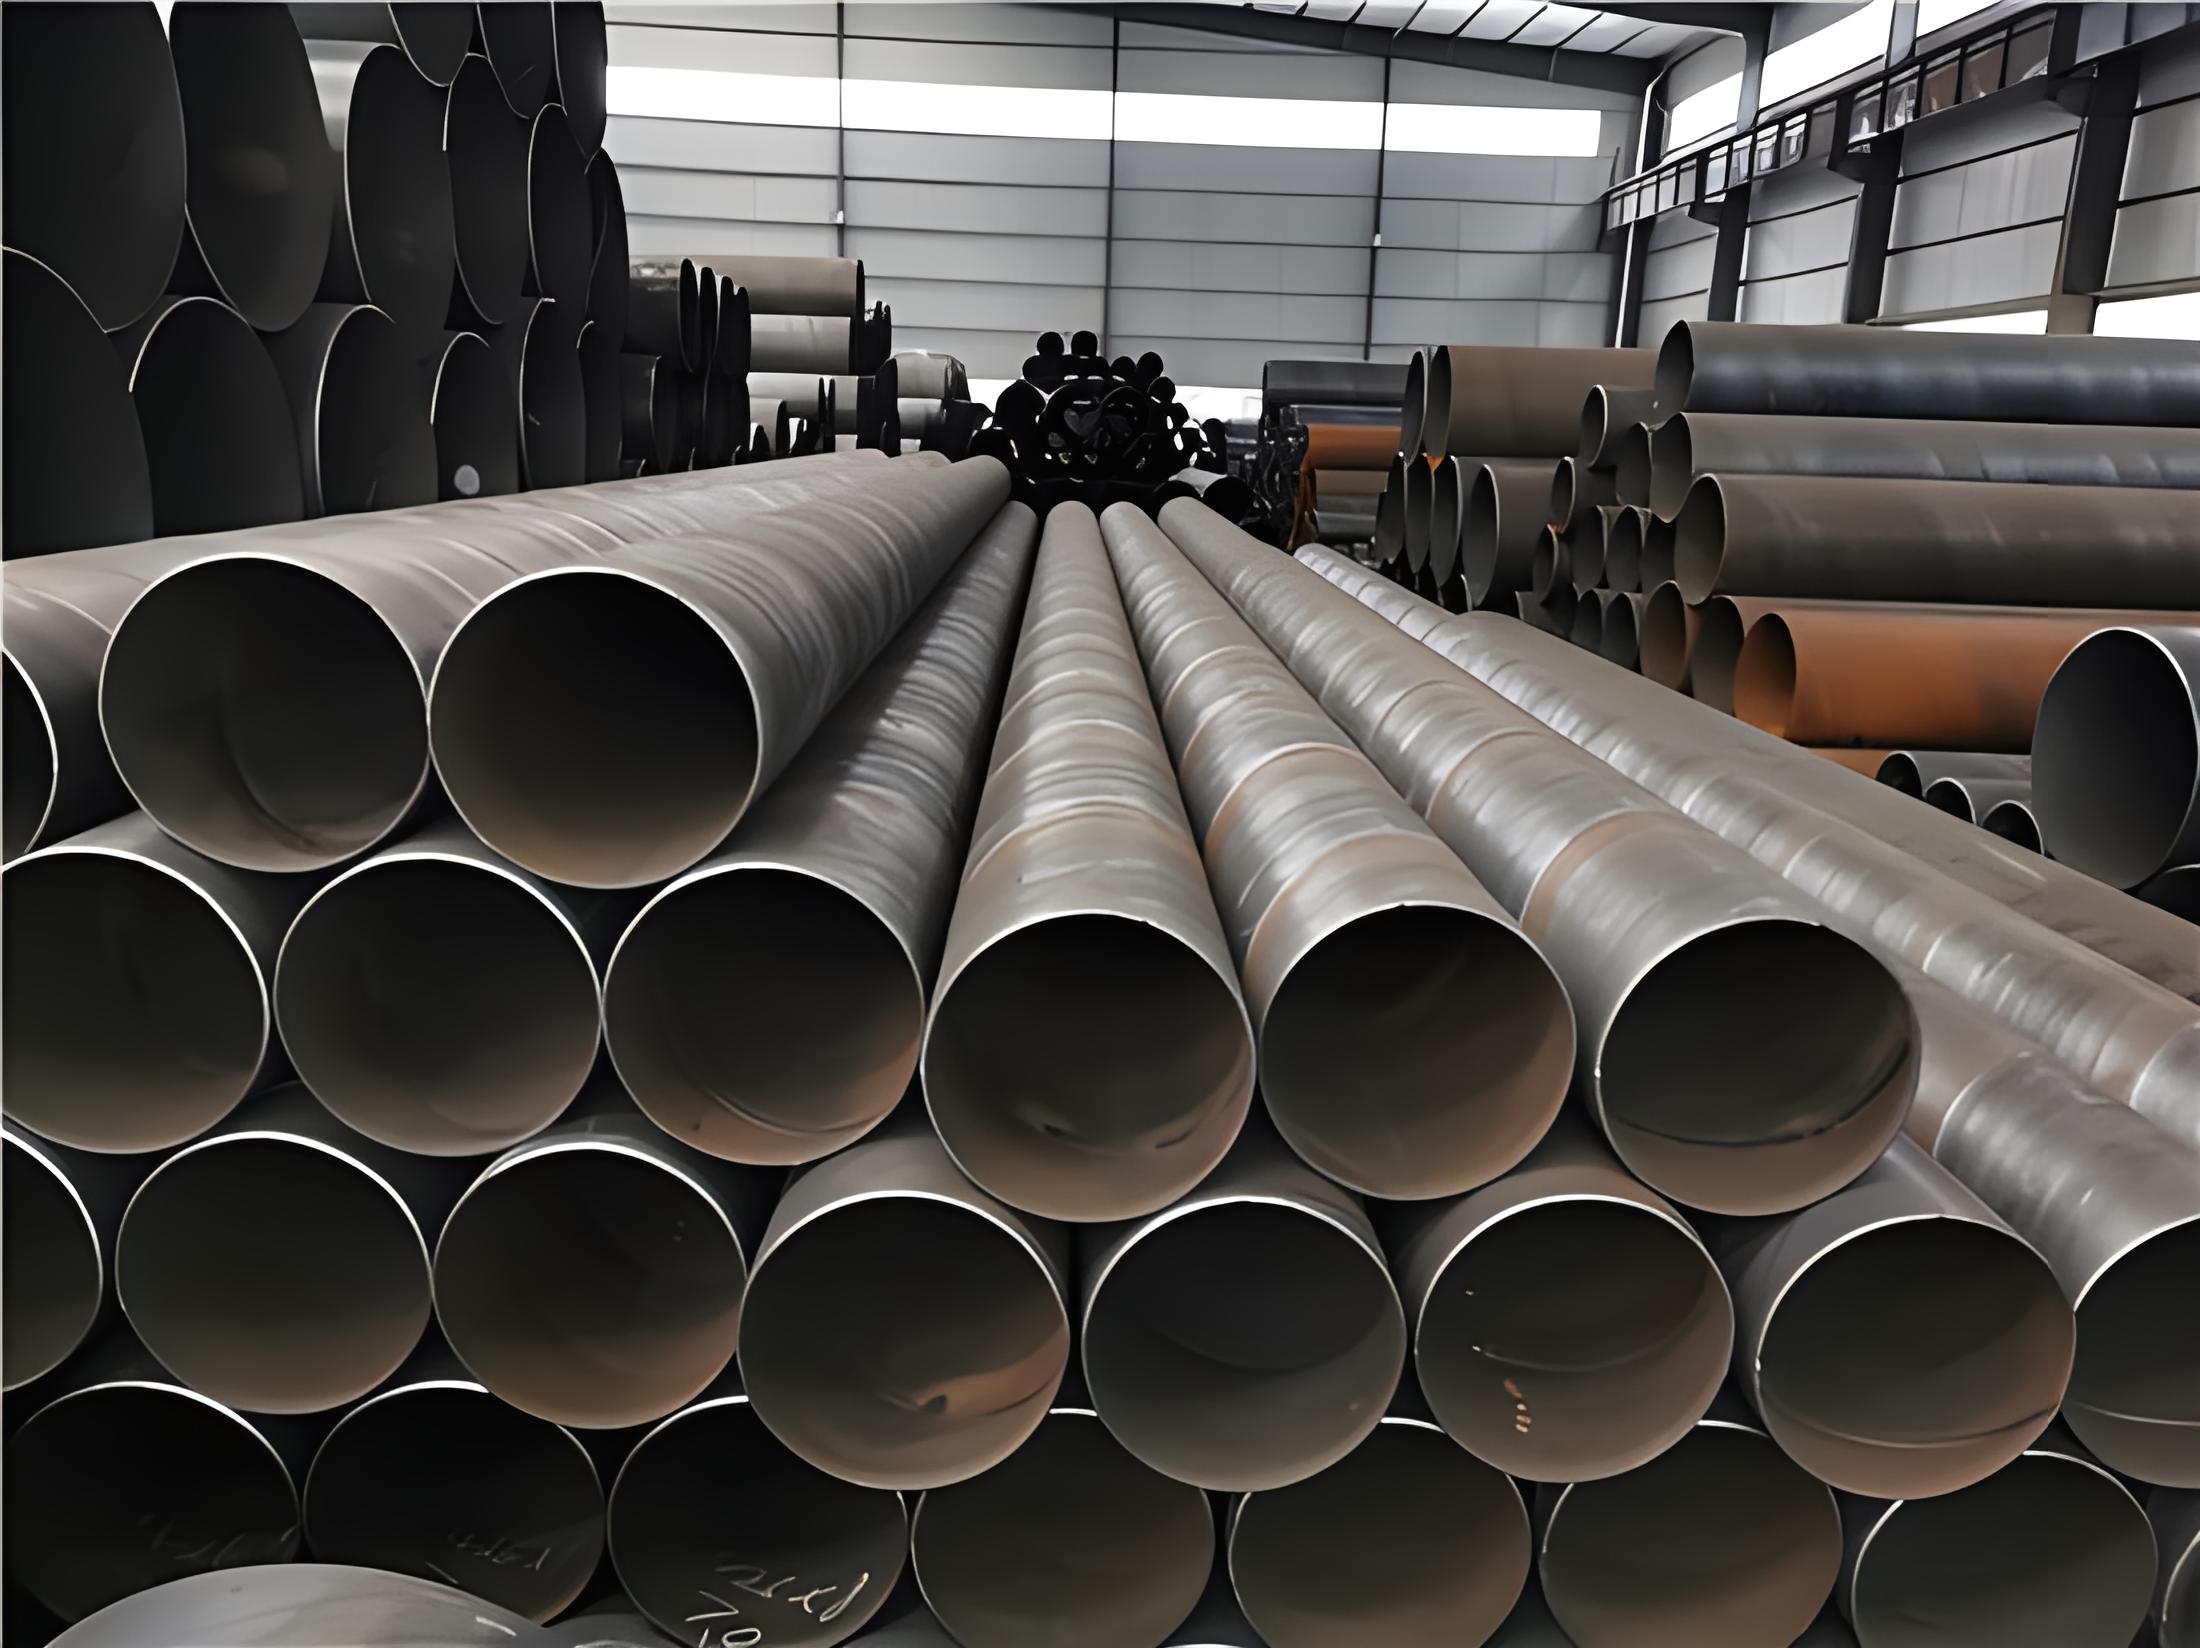 忻州螺旋钢管现代工业建设的坚实基石